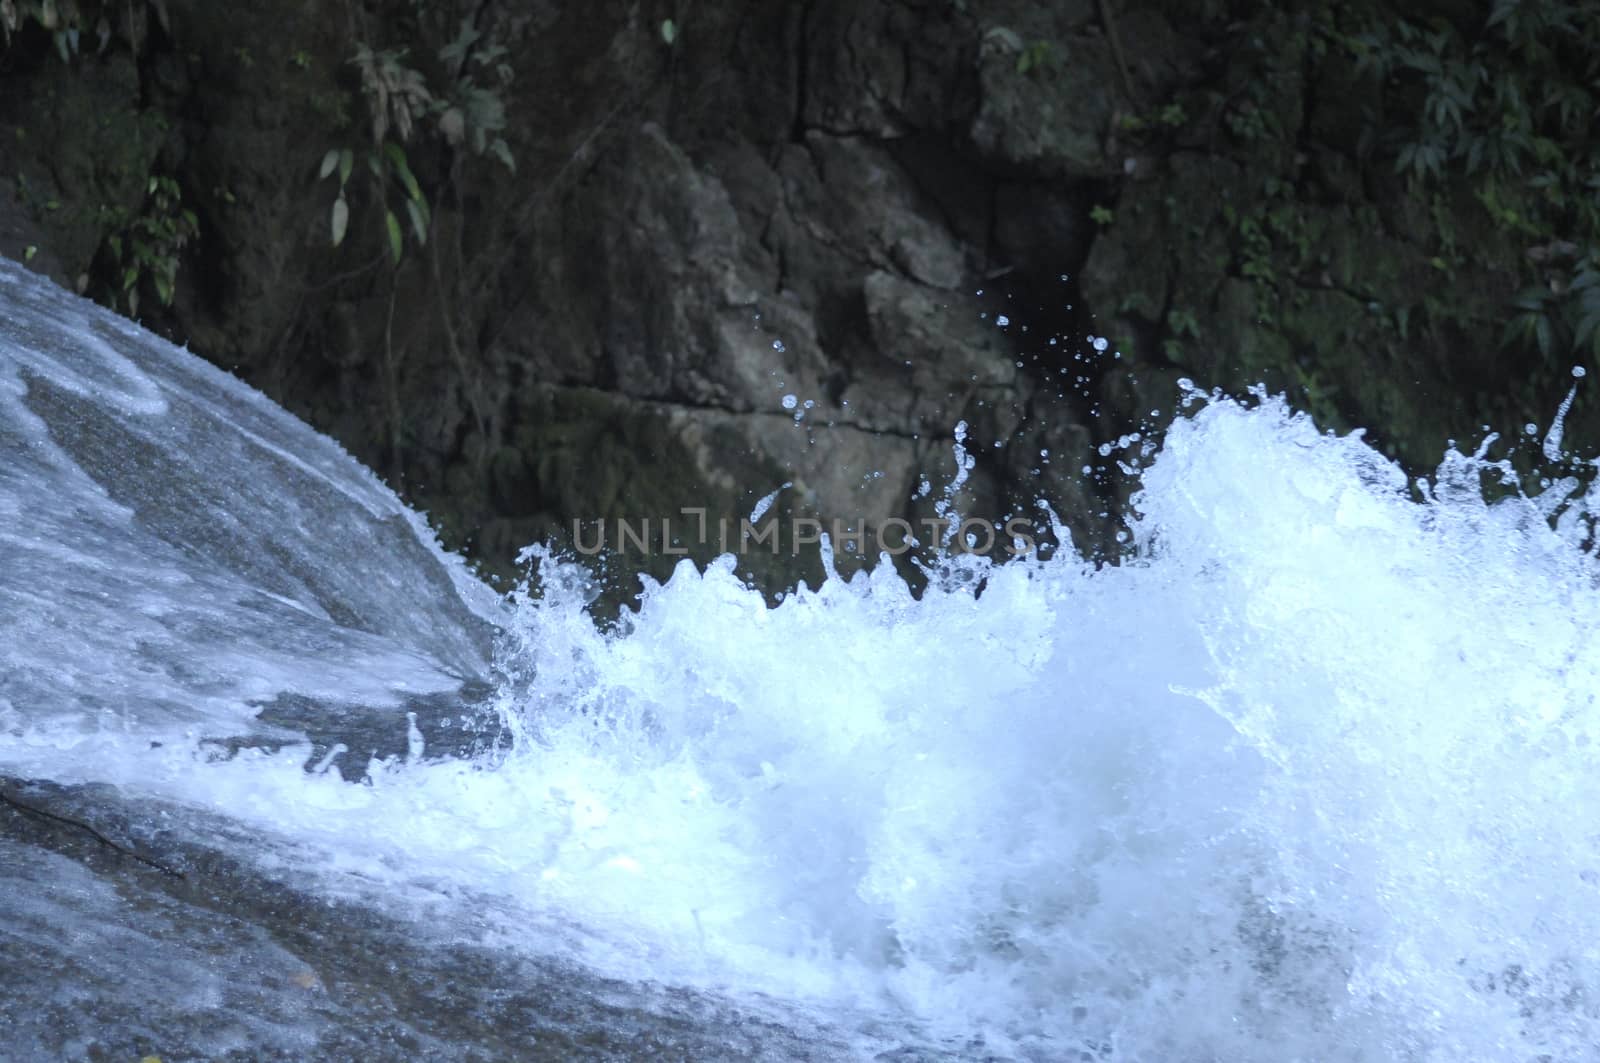 Bantimurung waterfall on Maros Indonesia